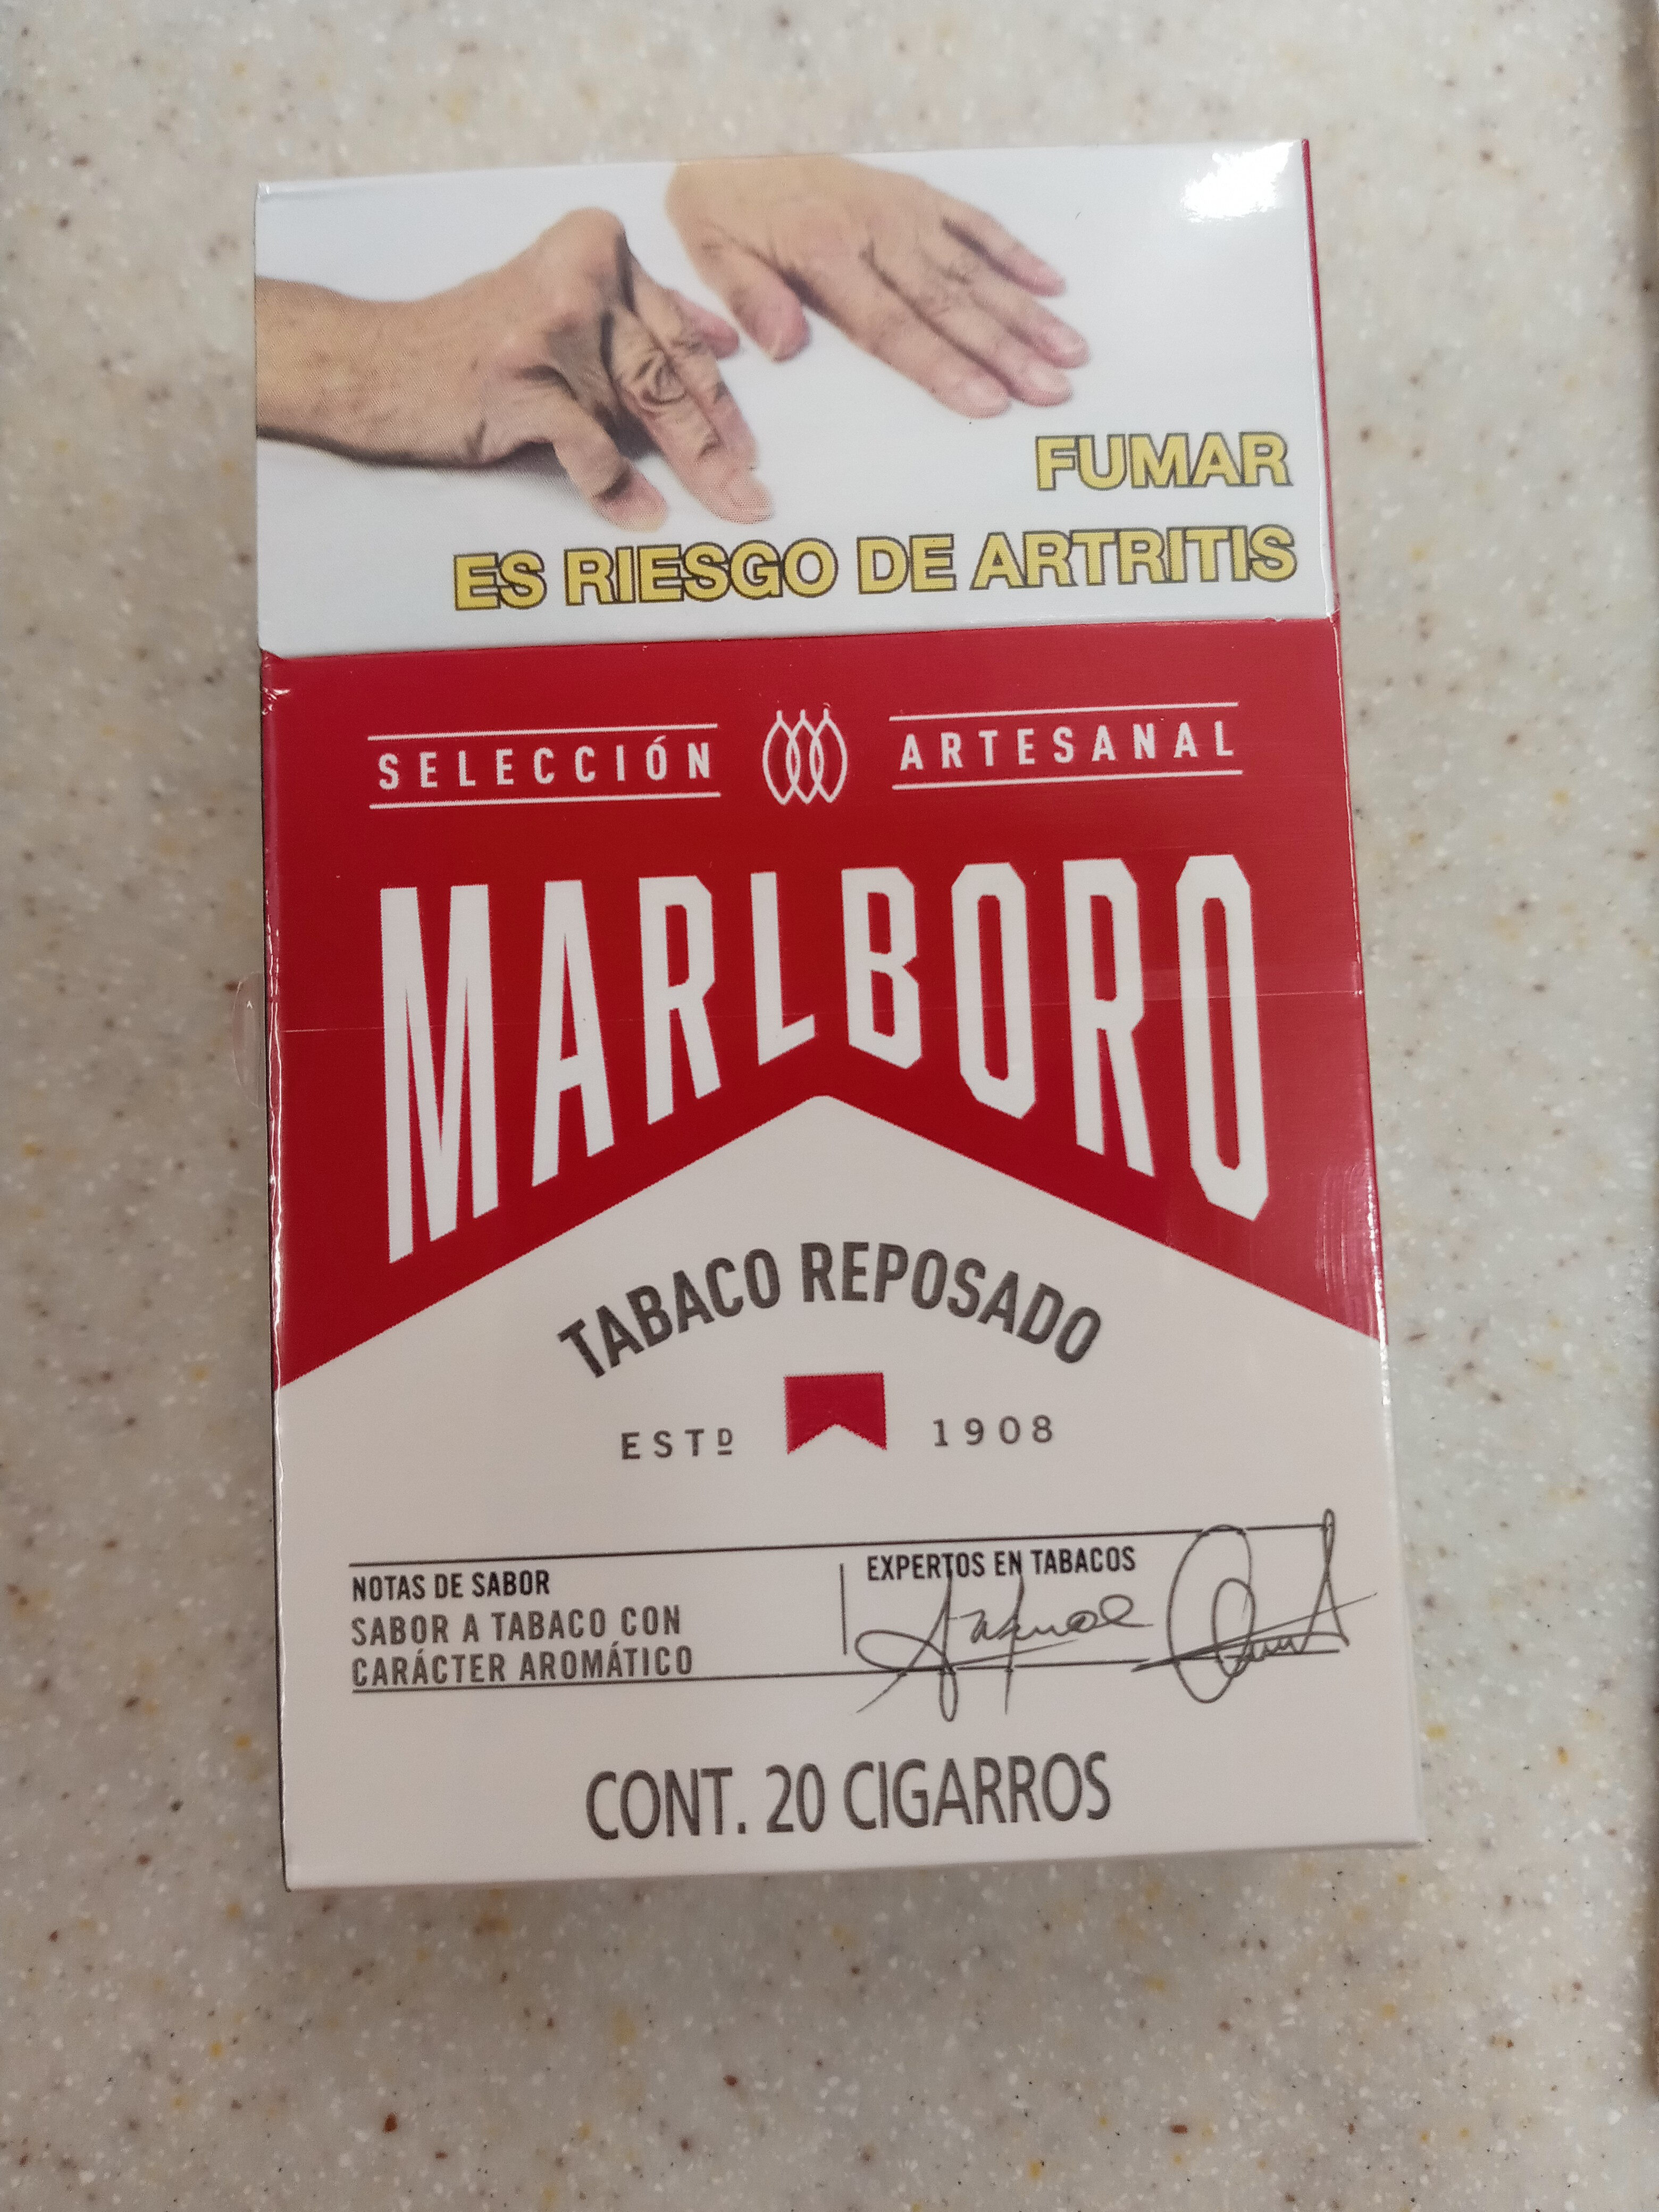 marlboro rojo tabaco reposado - Product - es